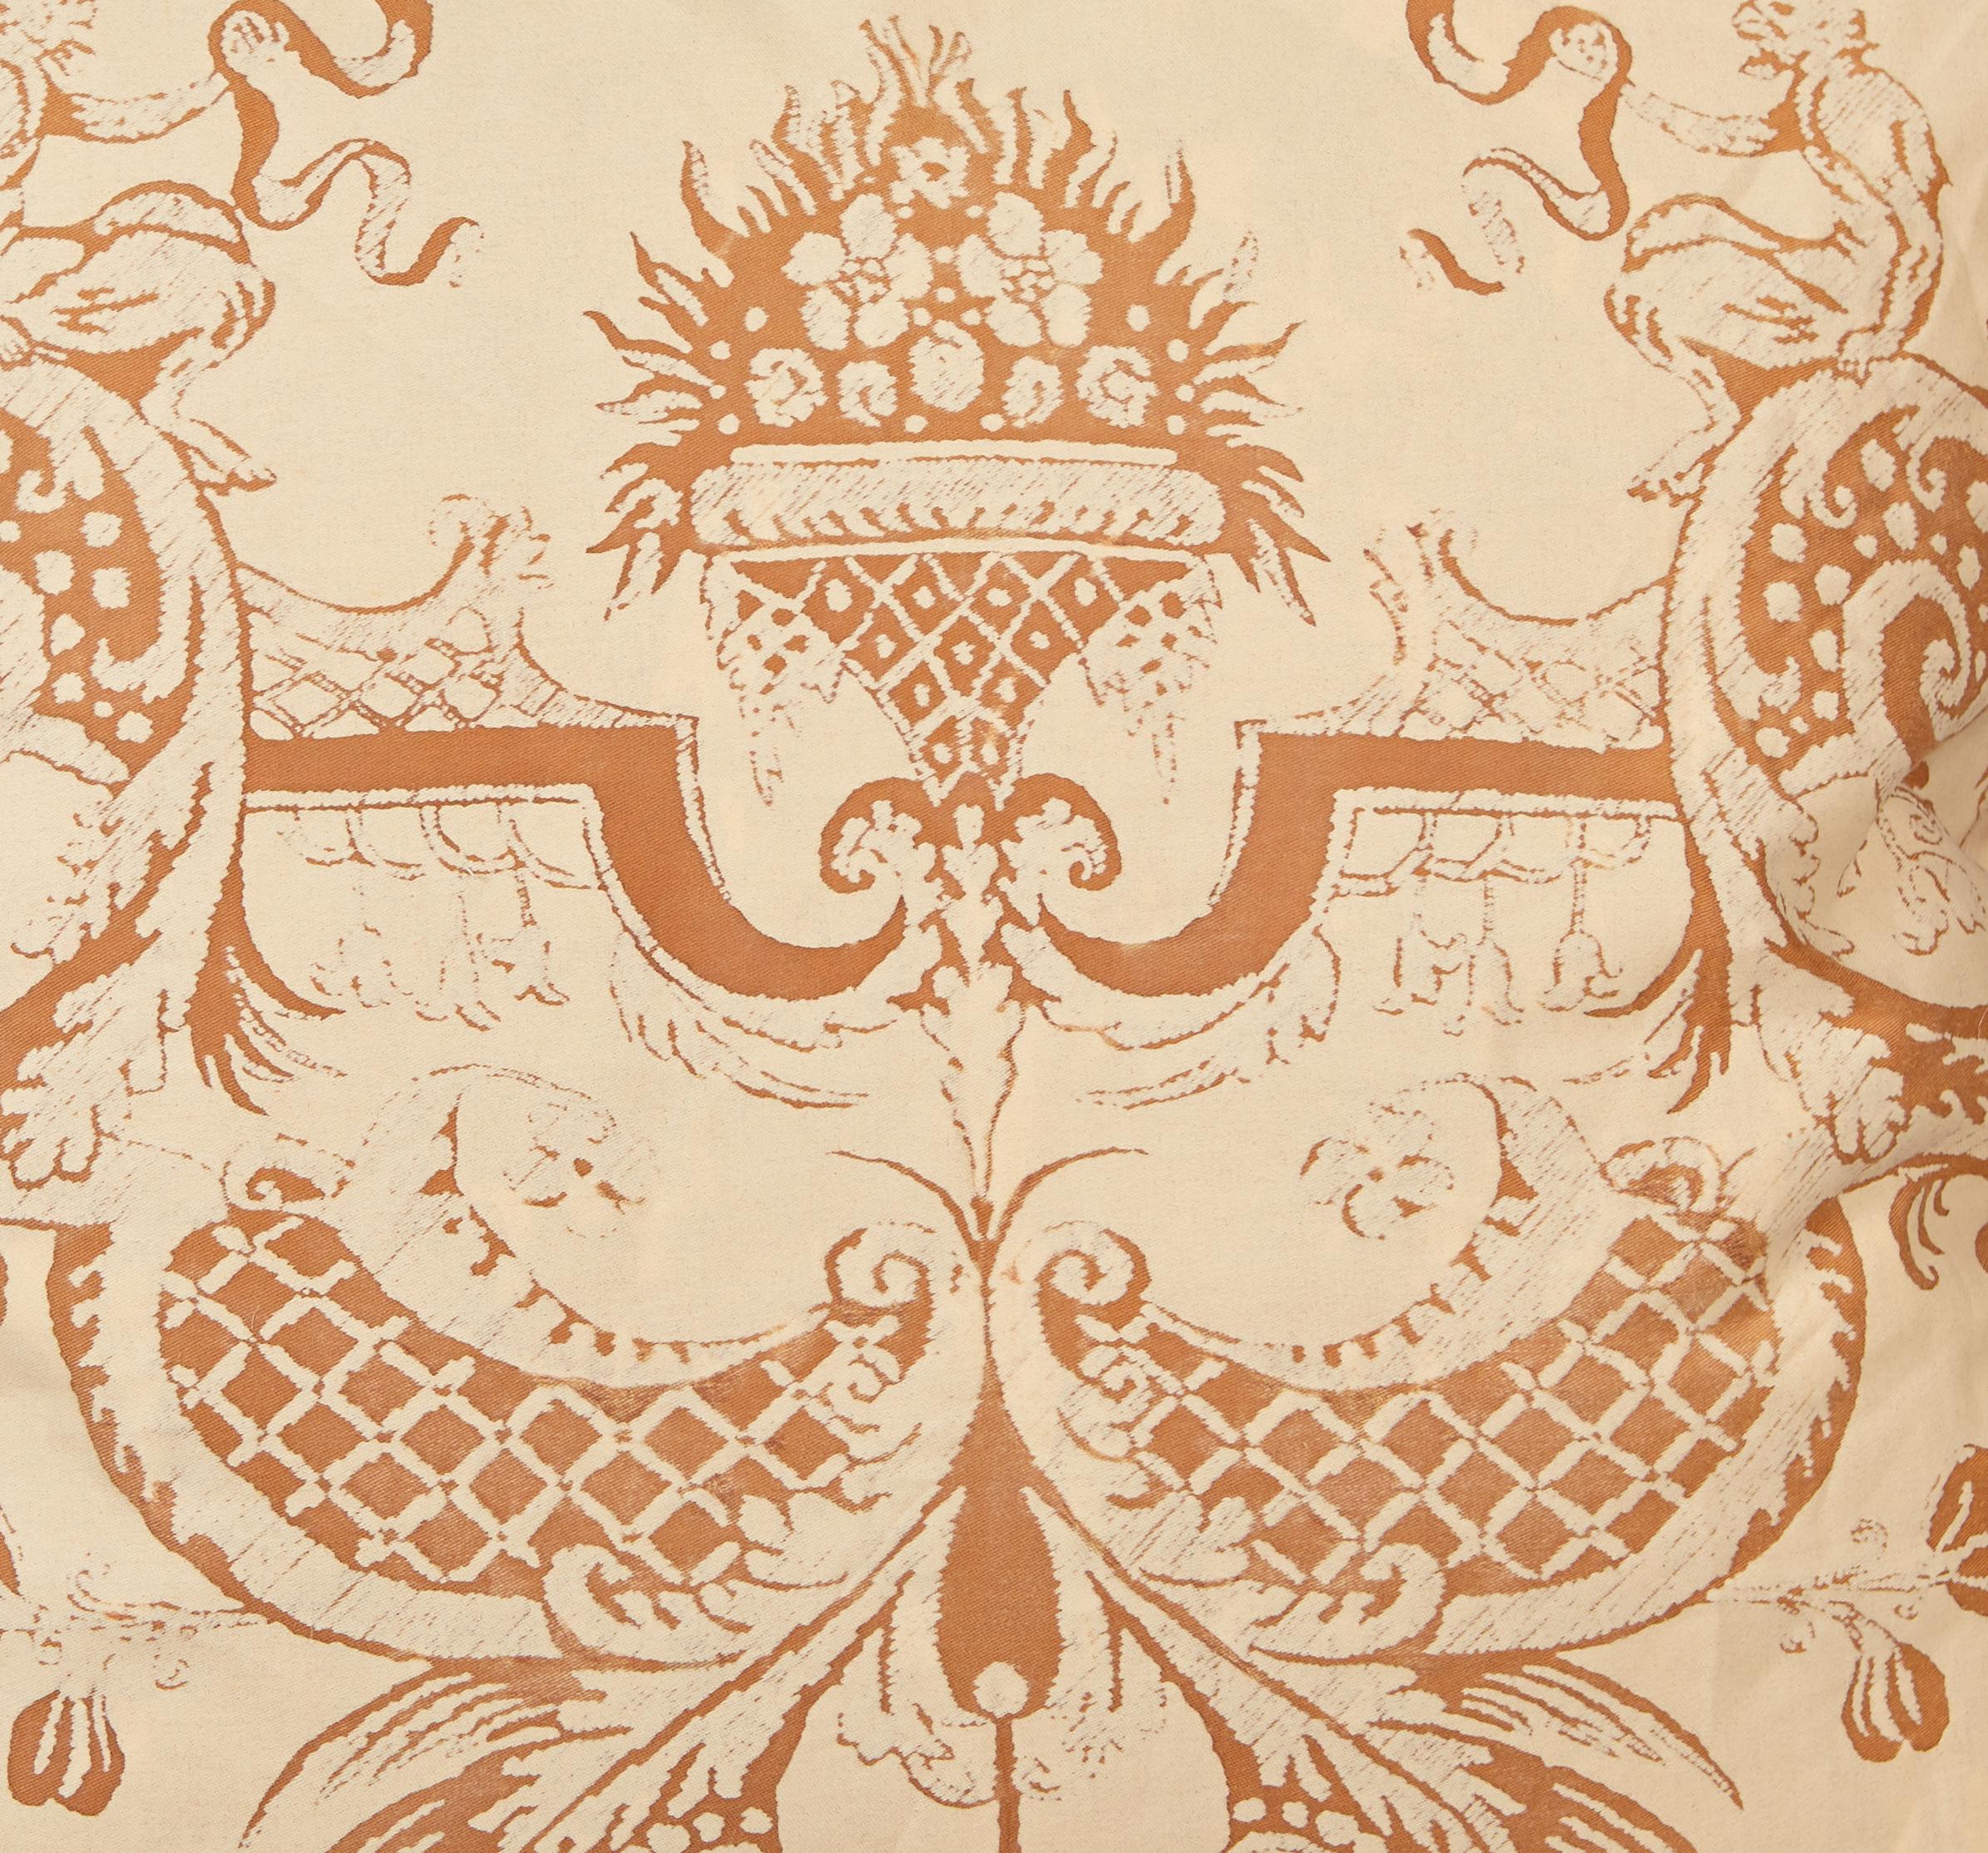 Une paire de coussins en tissu Fortuny dans l'imprimé Mazzarino, de couleur rouille et havane avec un bord en biais rayé et un support havane. Le motif Mazzarino est un dessin français du XVIIe siècle qui tient son nom du cardinal Mazarin à la cour